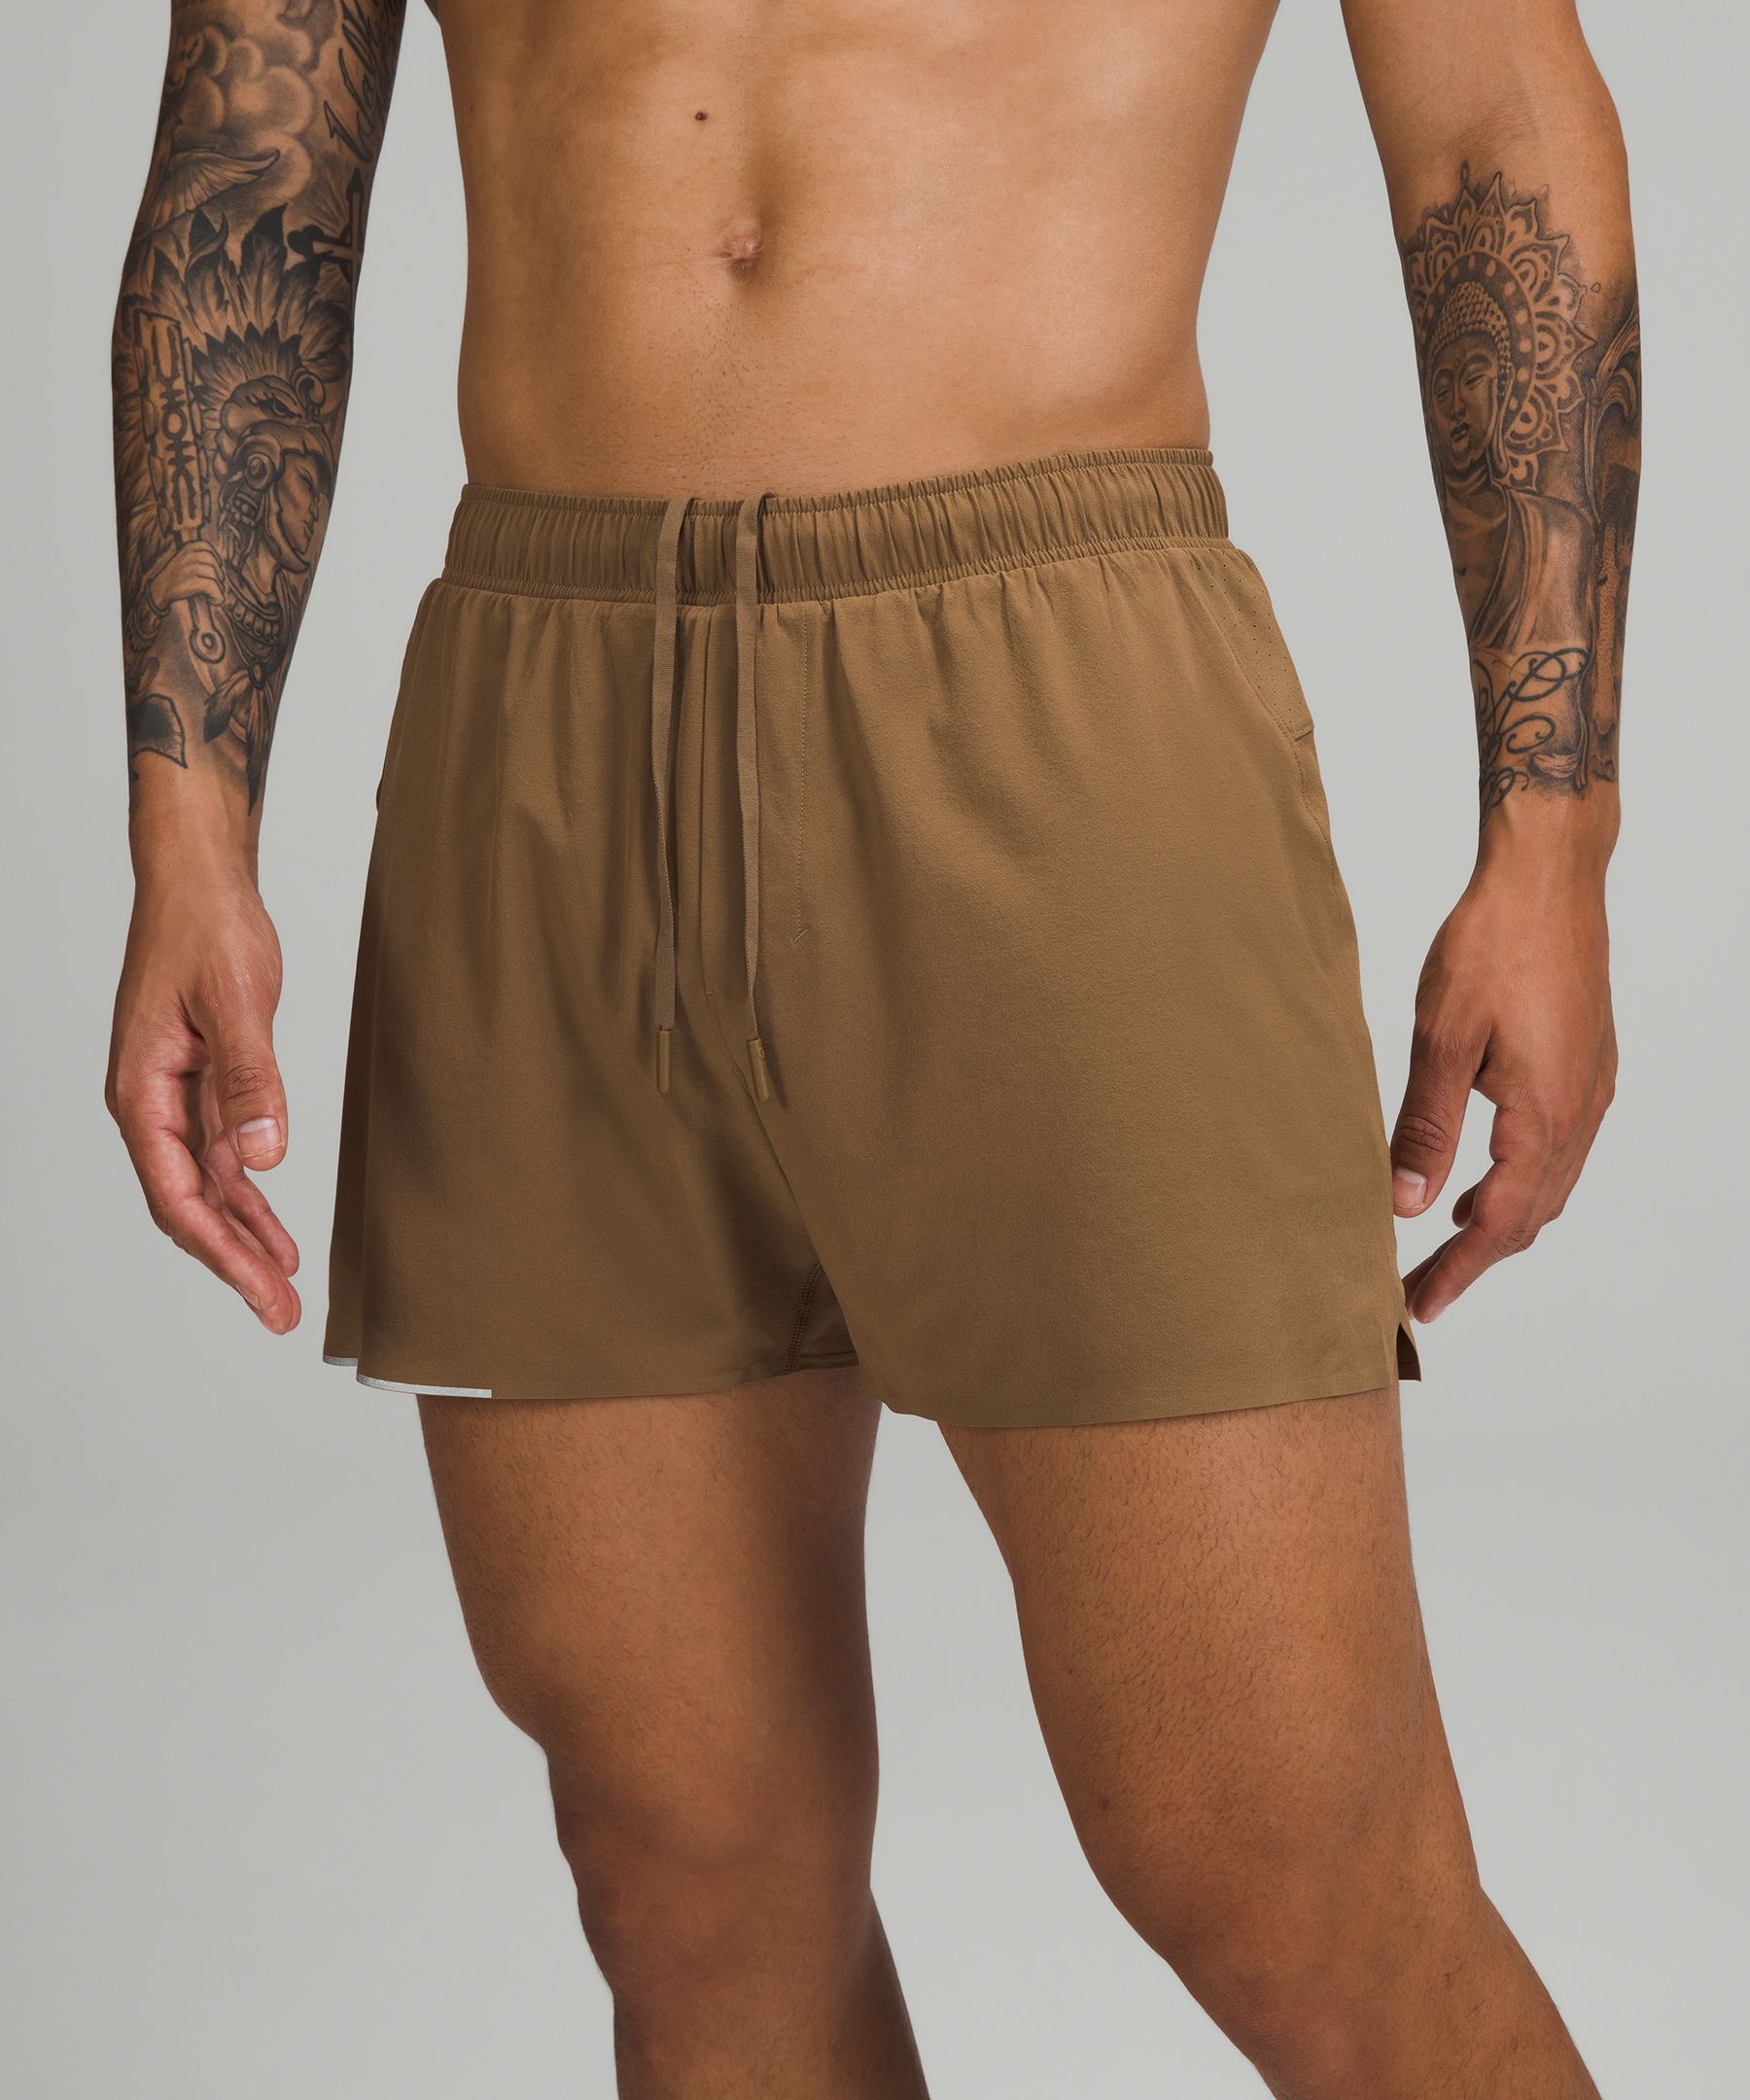 Lululemon Surge Shorts 4” Lined, Men's Fashion, Bottoms, Shorts on